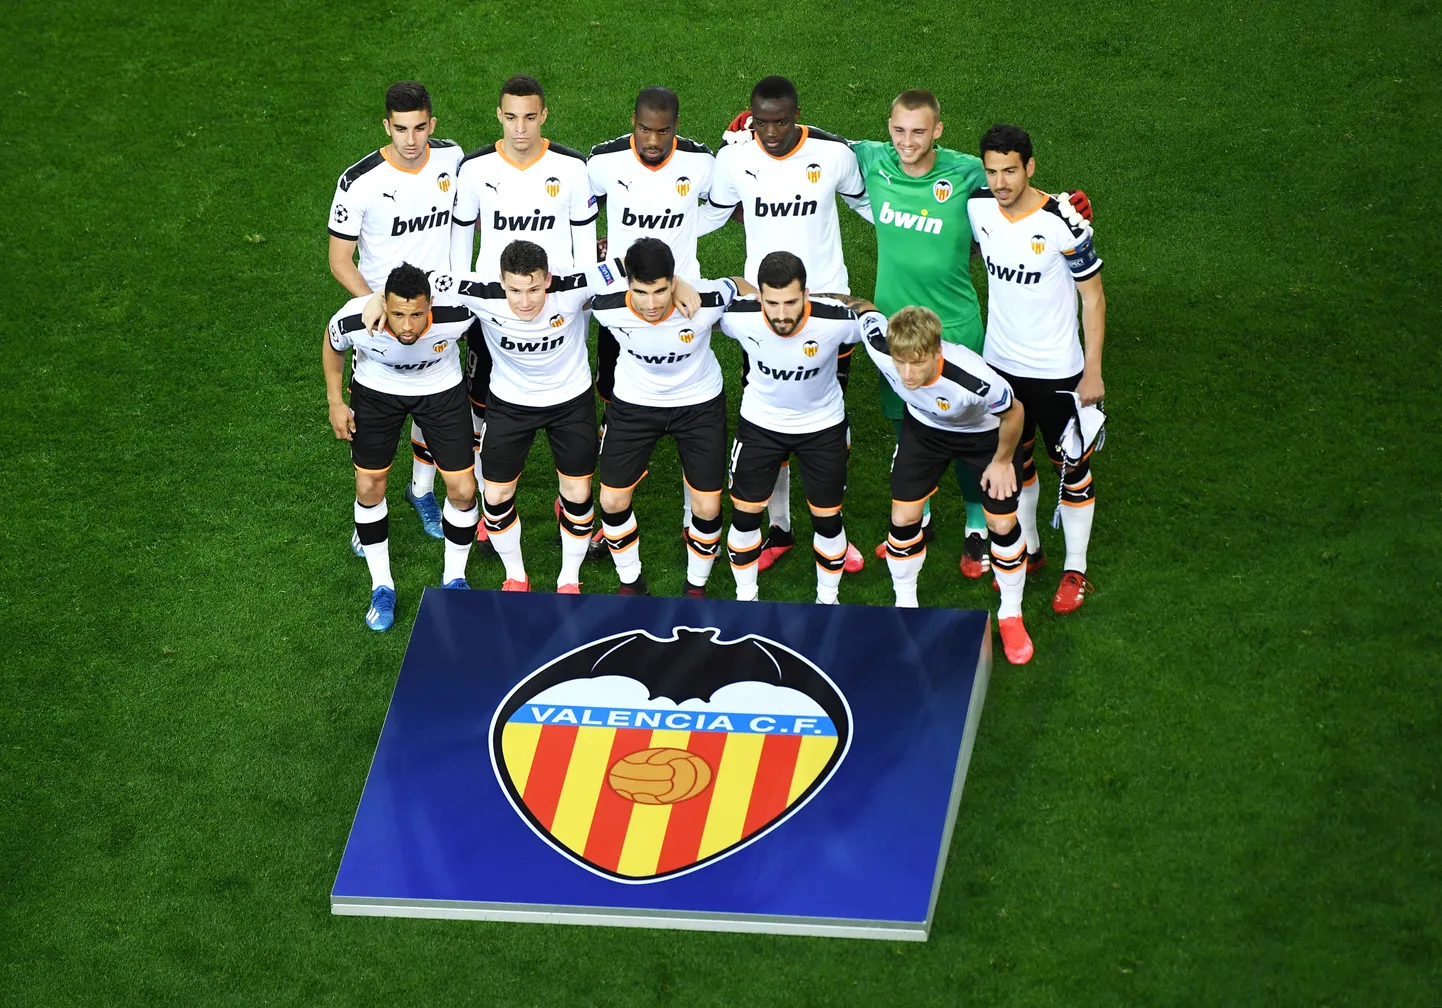 "Valencia" futbolisti